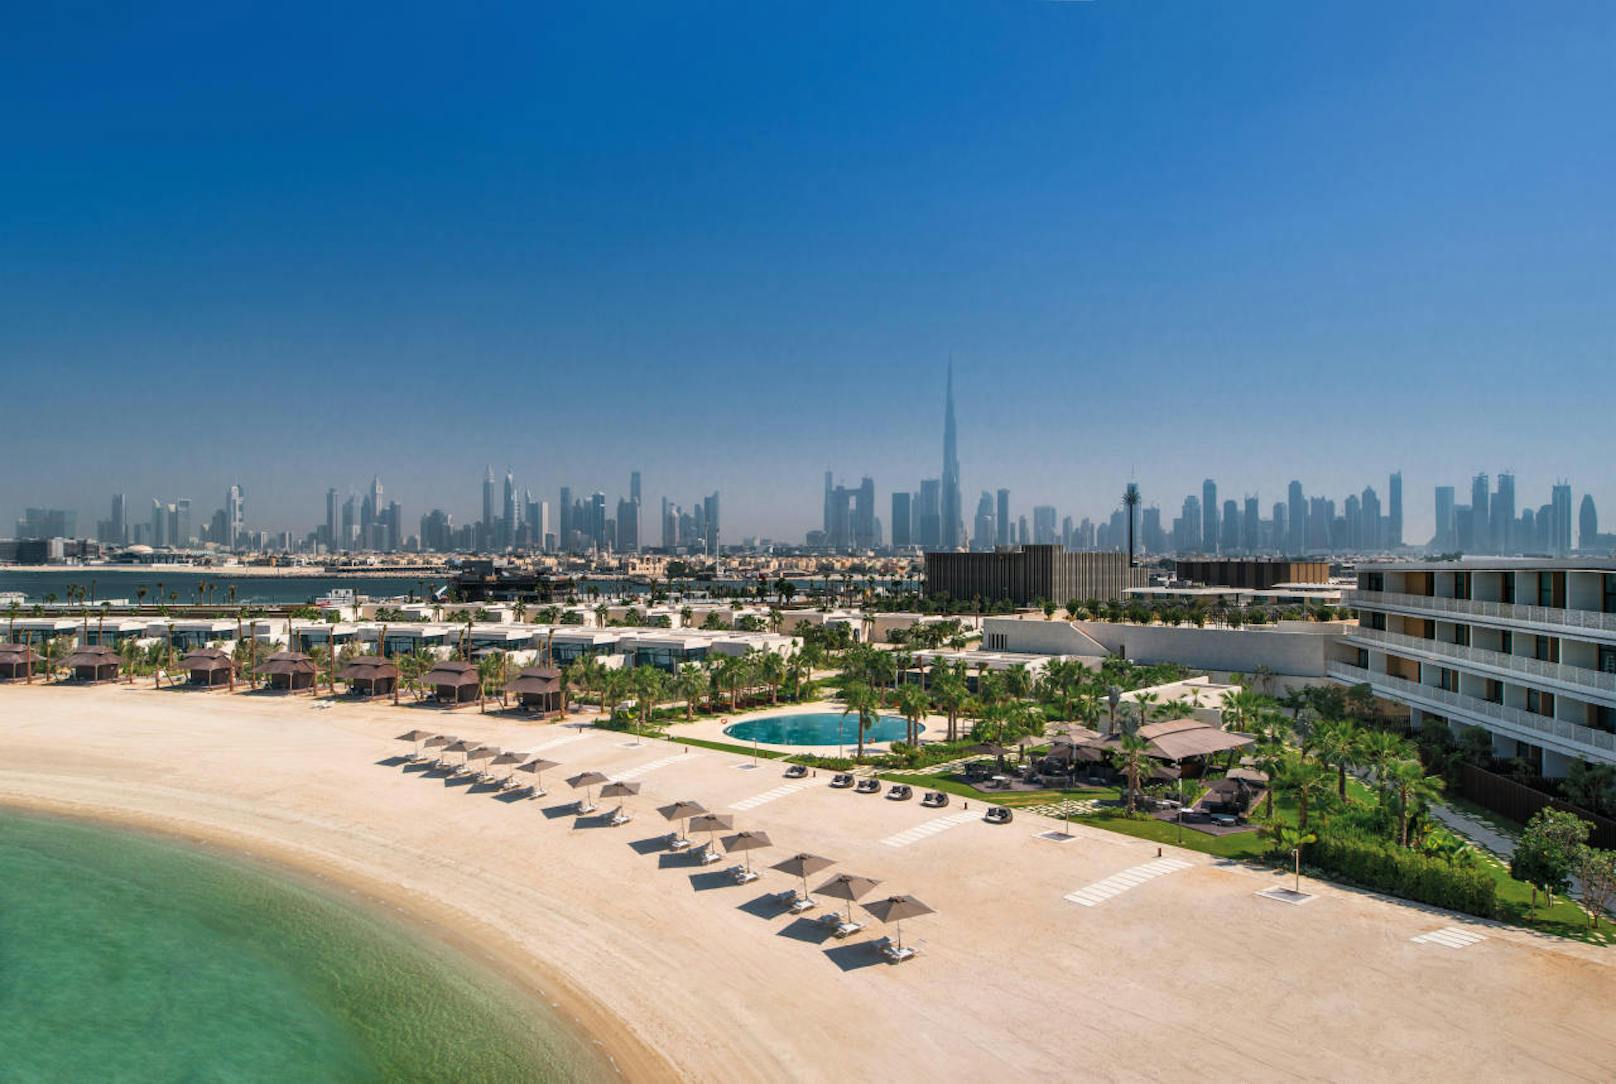 Bulgari Resort Dubai befindet sich auf der Insel "Jumeira Bay Island", die wie ein Seepferdchen geformt und über eine Brücke mit dem Festland verbunden ist.